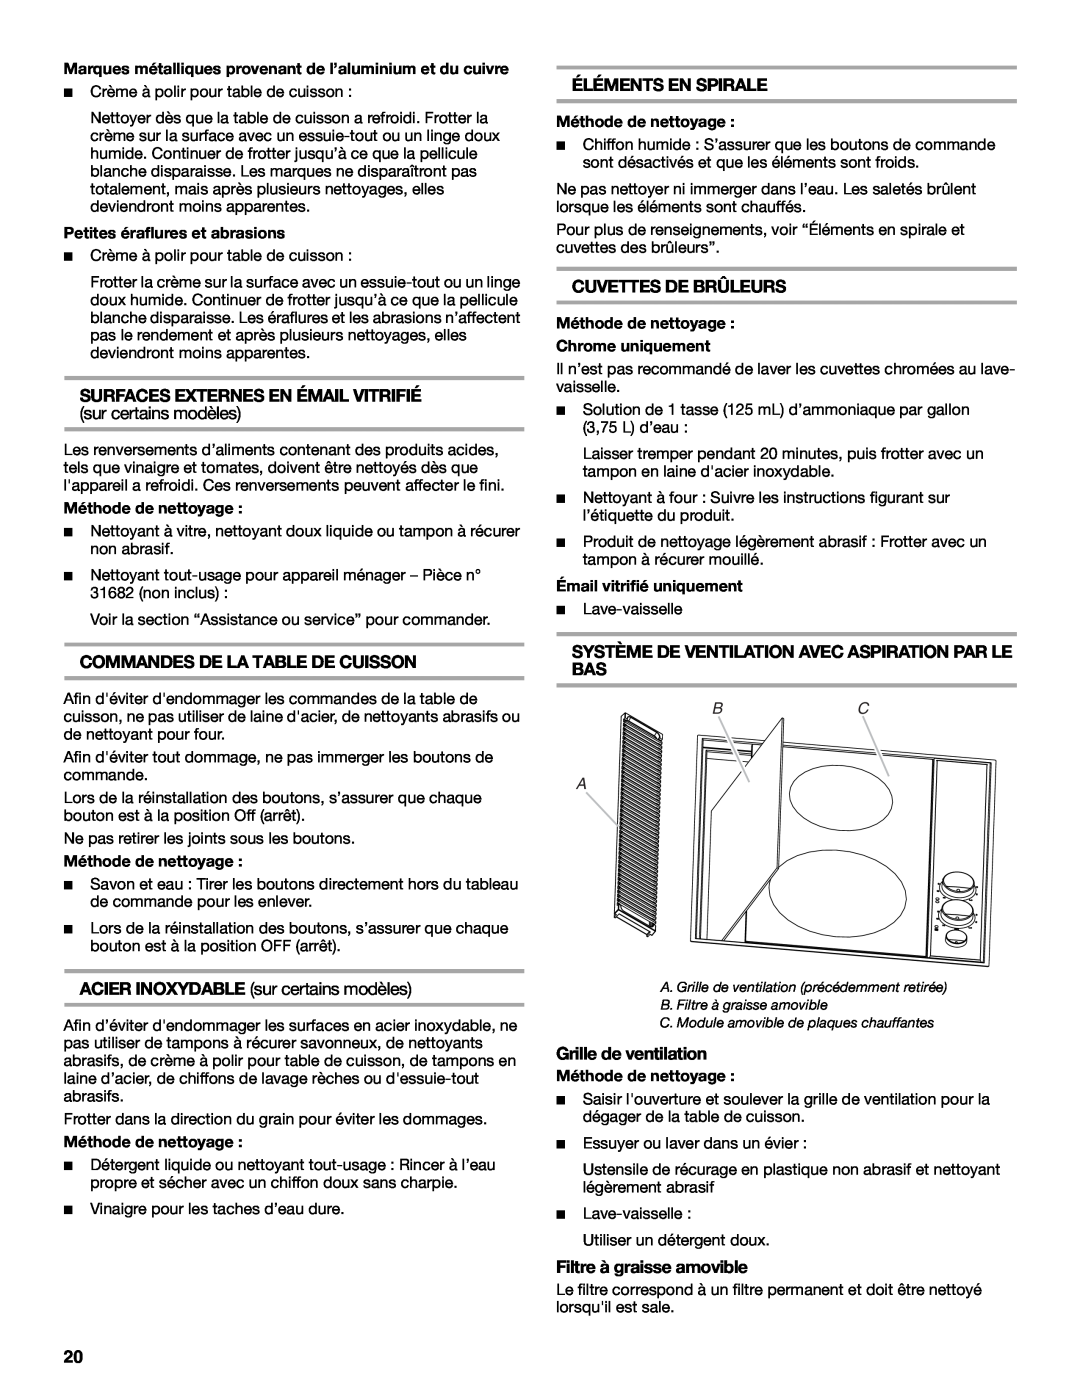 Jenn-Air 20 manual Surfaces Externes En Émail Vitrifié, sur certains modèles, Commandes De La Table De Cuisson, Bc A 